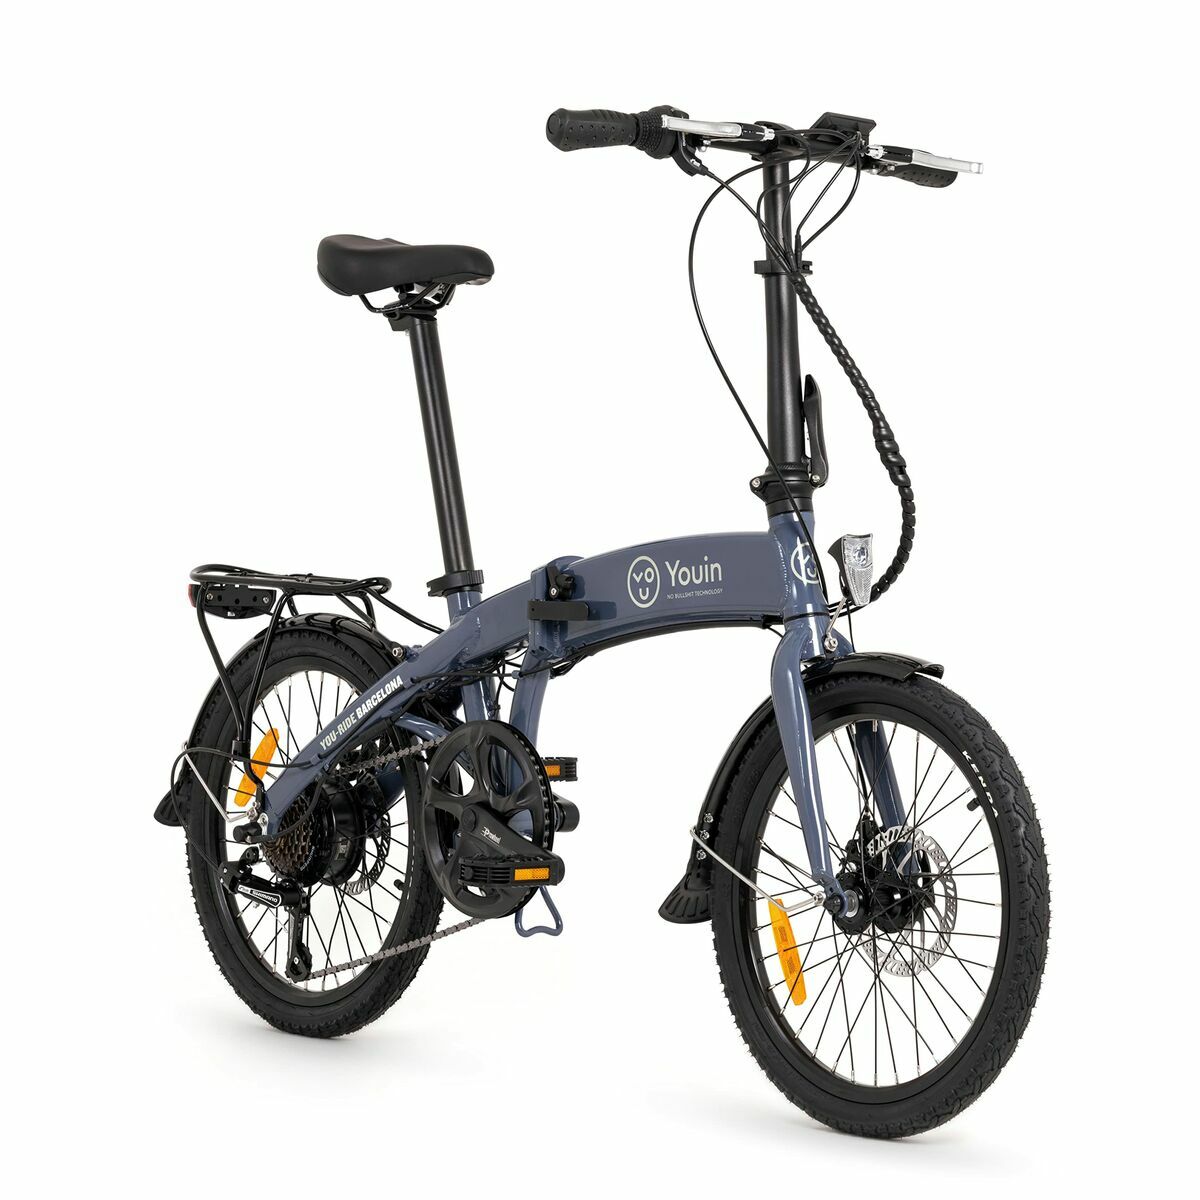 Bicicletta Elettrica Youin BK1300 250 W 25 km/h Grigio Azzurro 20"